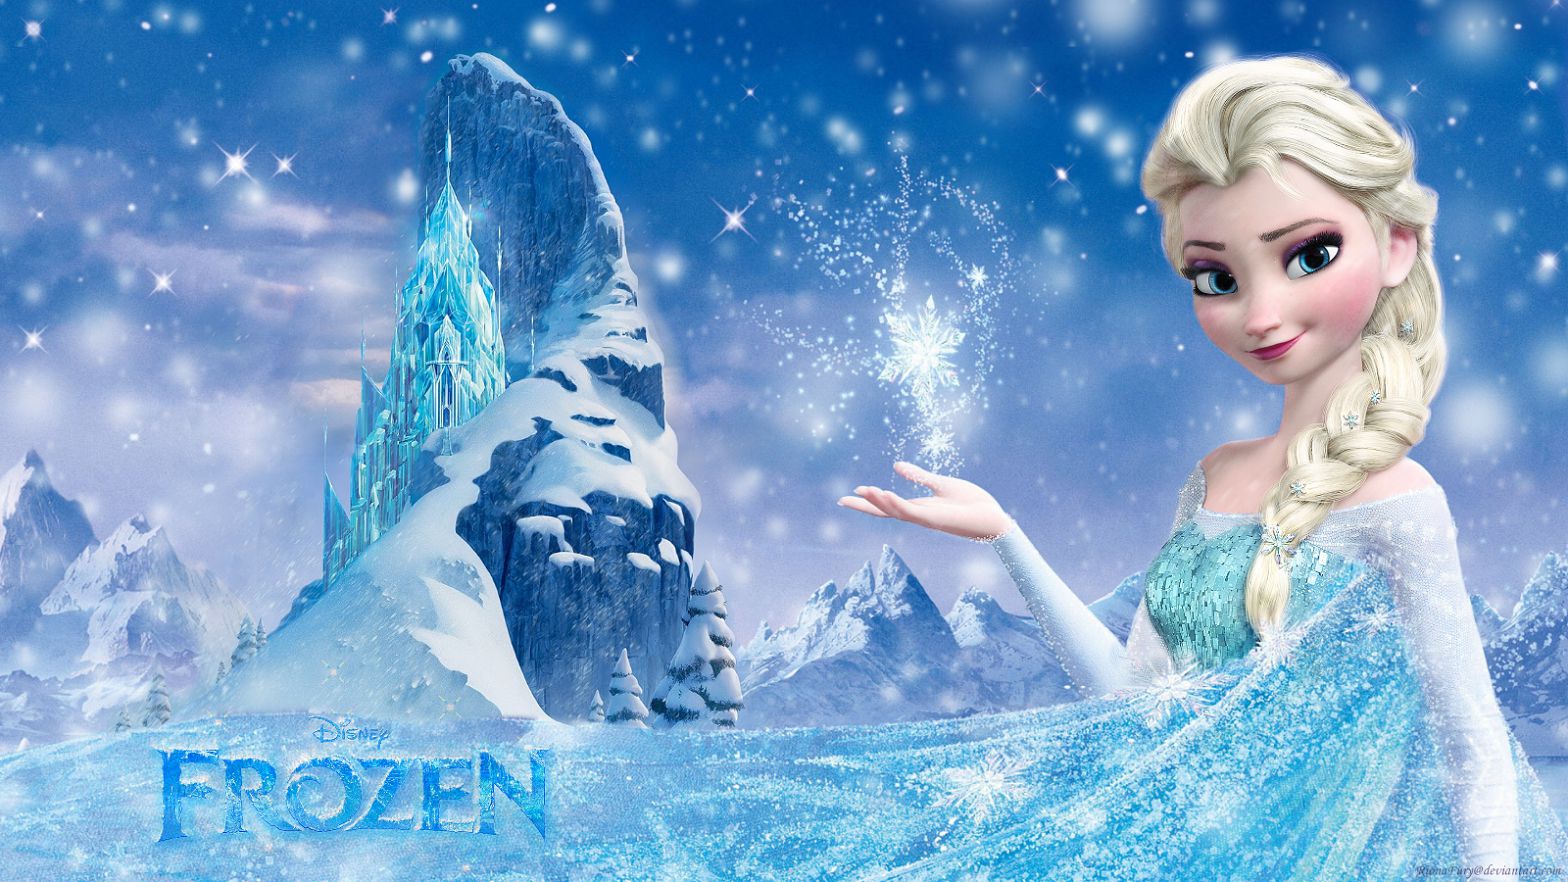 Disney Frozen Elsa HD Wallpapers Images Of Frozen Full Movie